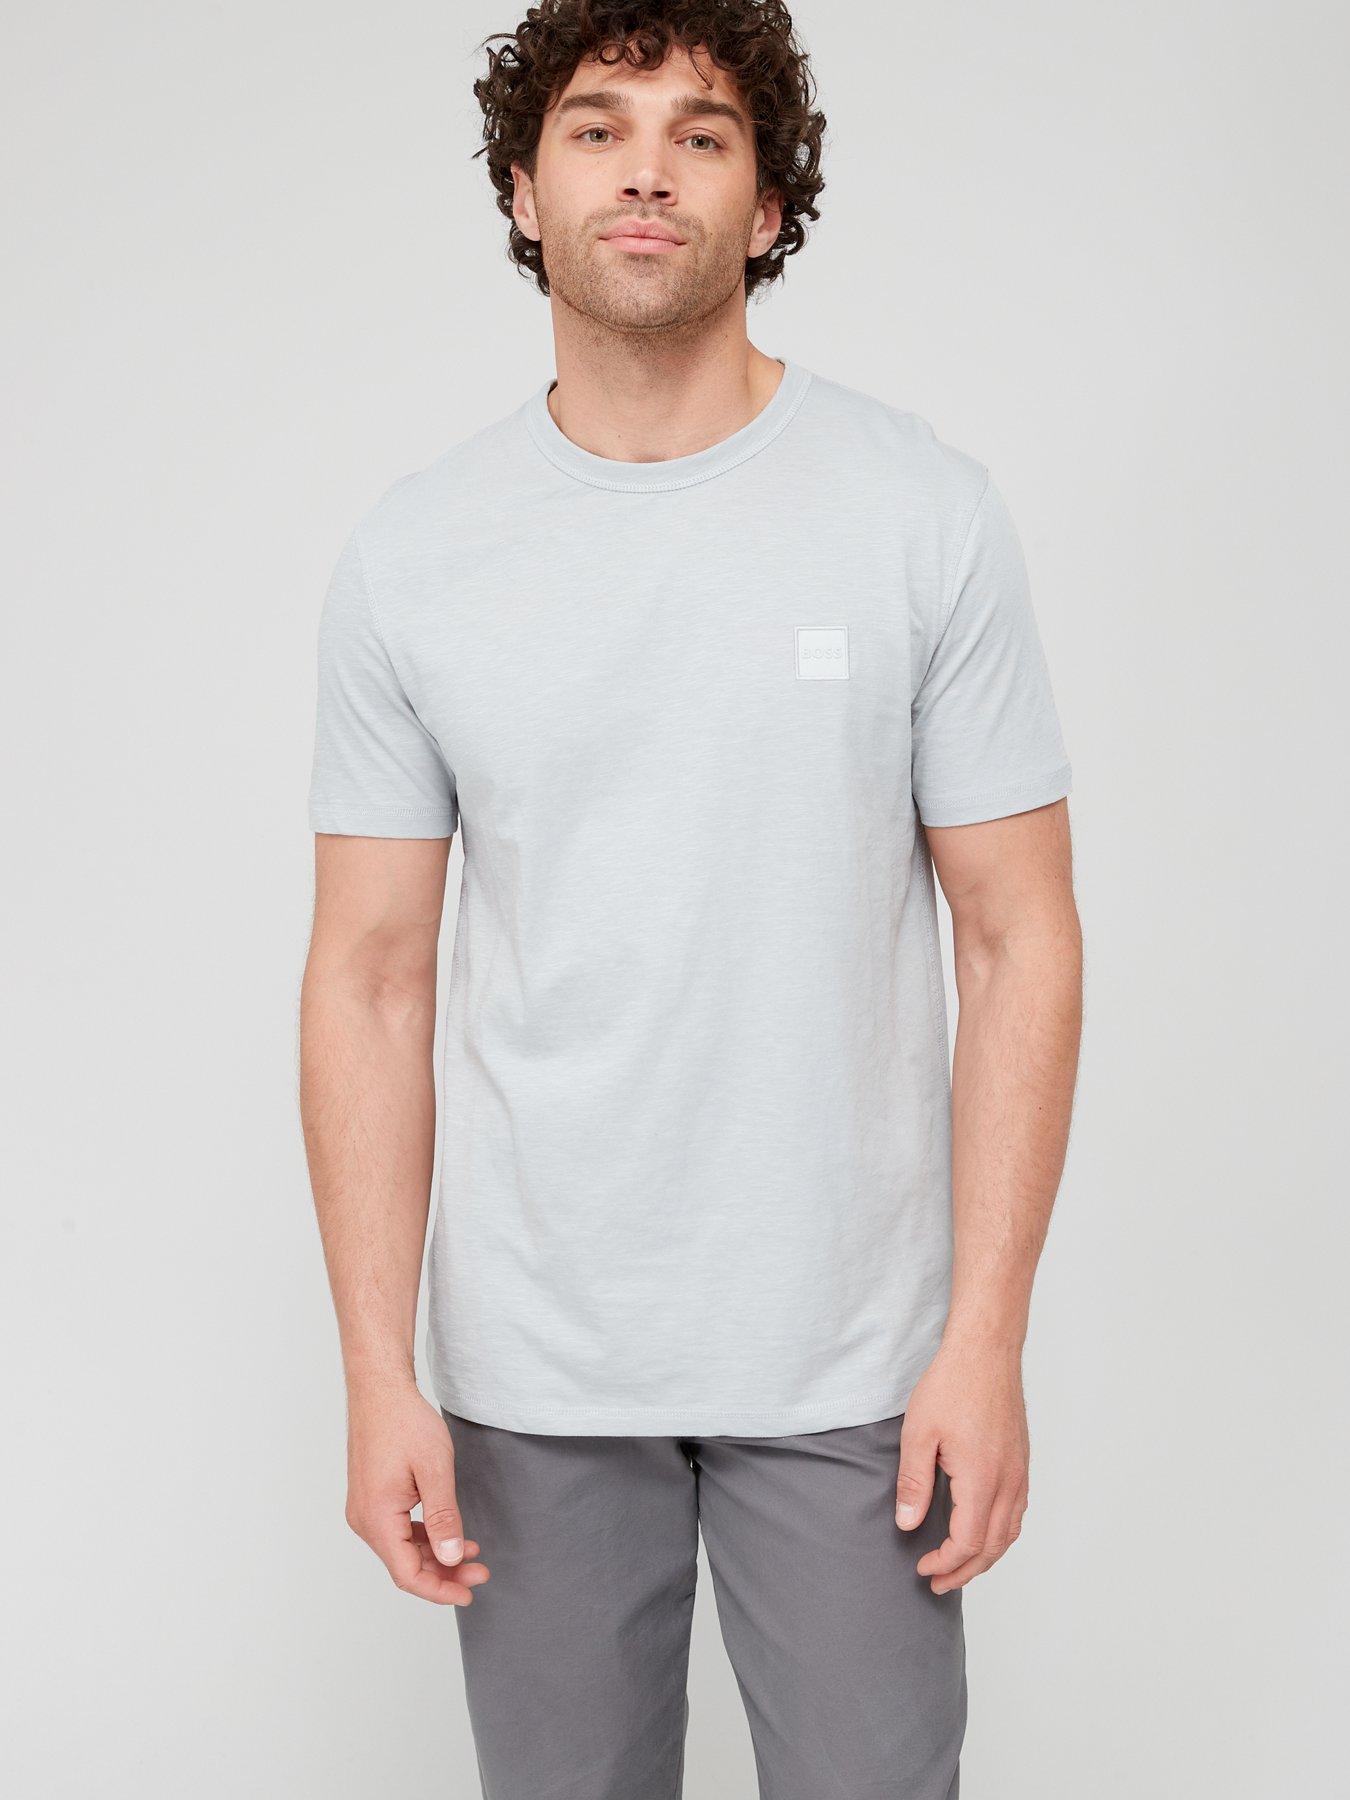 BadRhino White Core T-Shirt